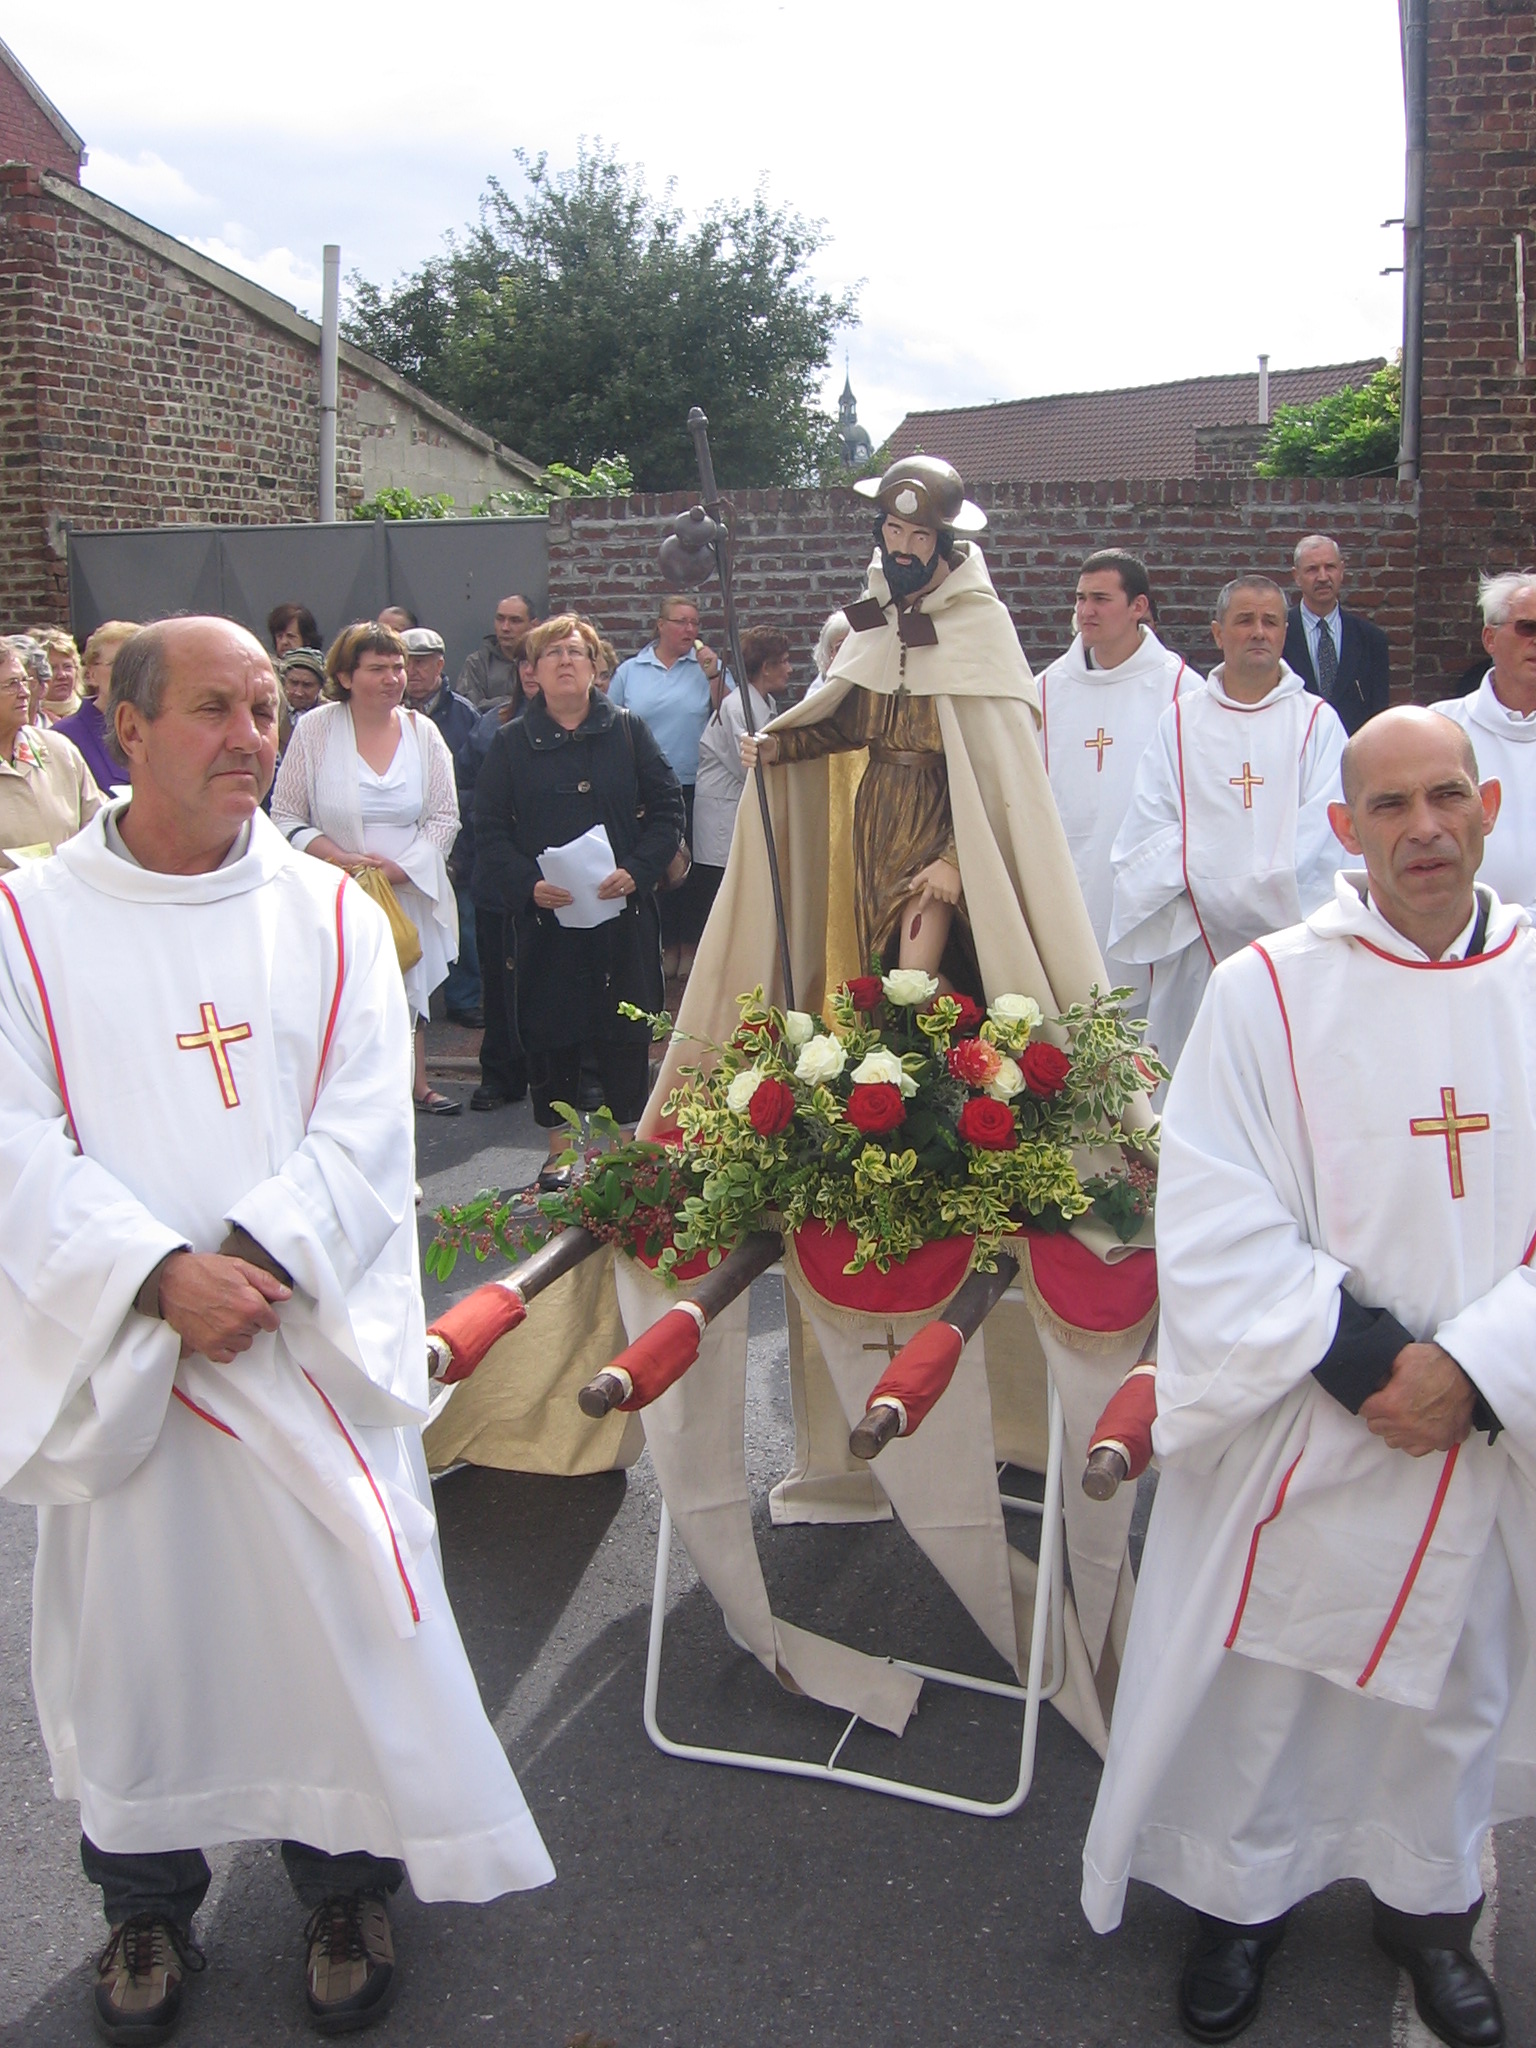 La procession se dirige vers la chapelle St Roch d'Hergnies